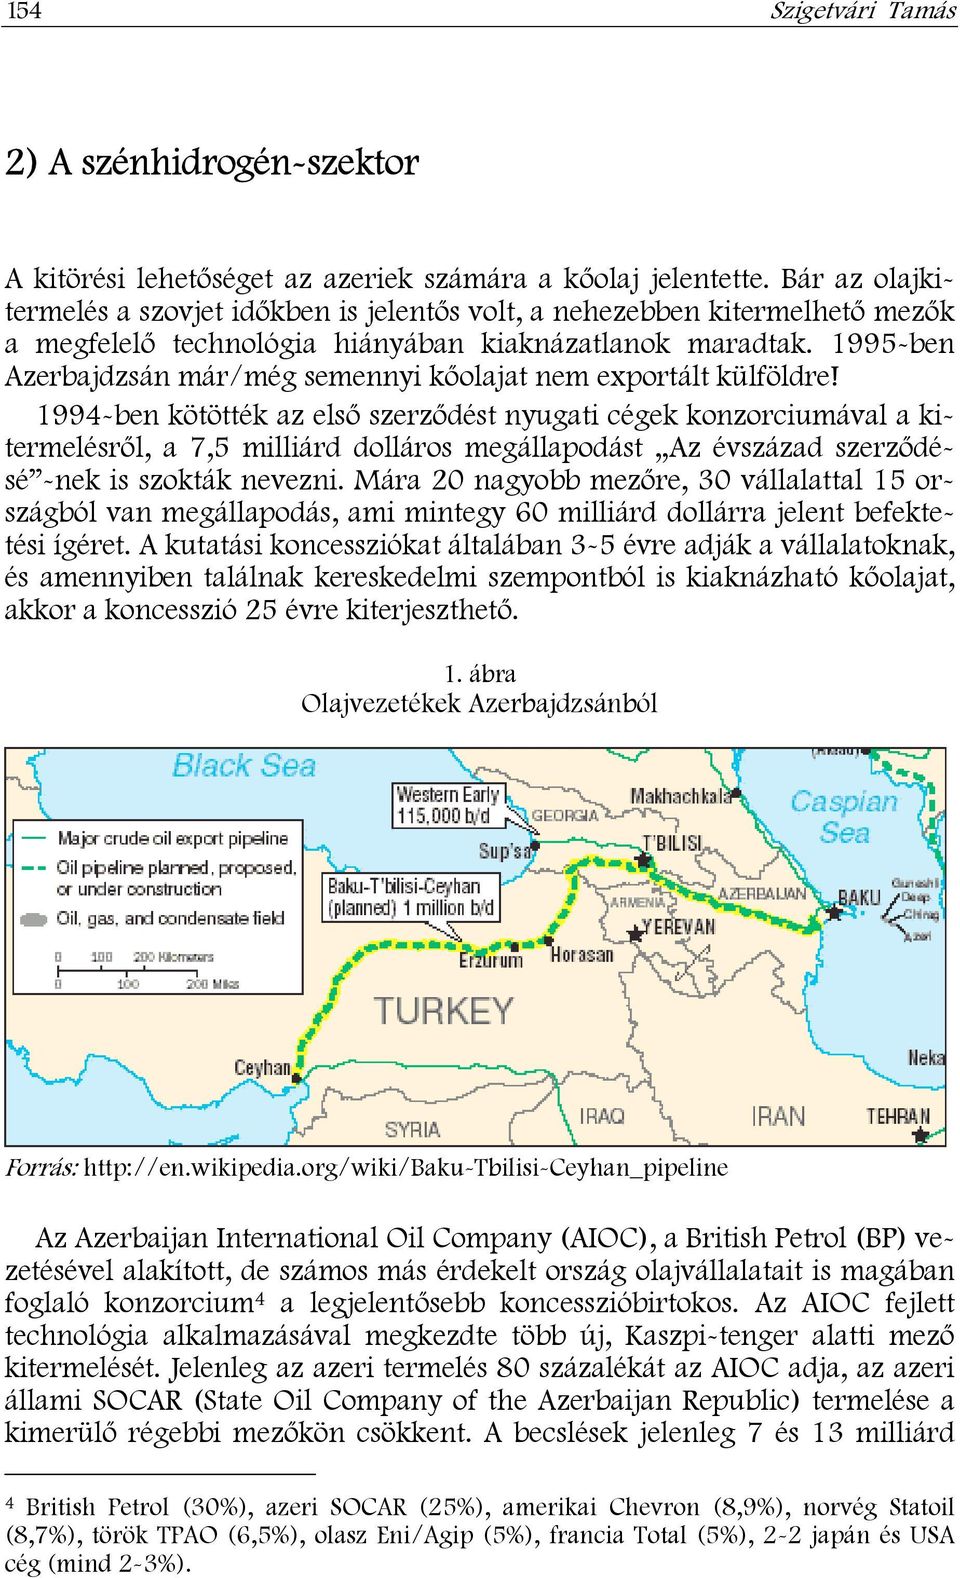 1995-ben Azerbajdzsán már/még semennyi kőolajat nem exportált külföldre!